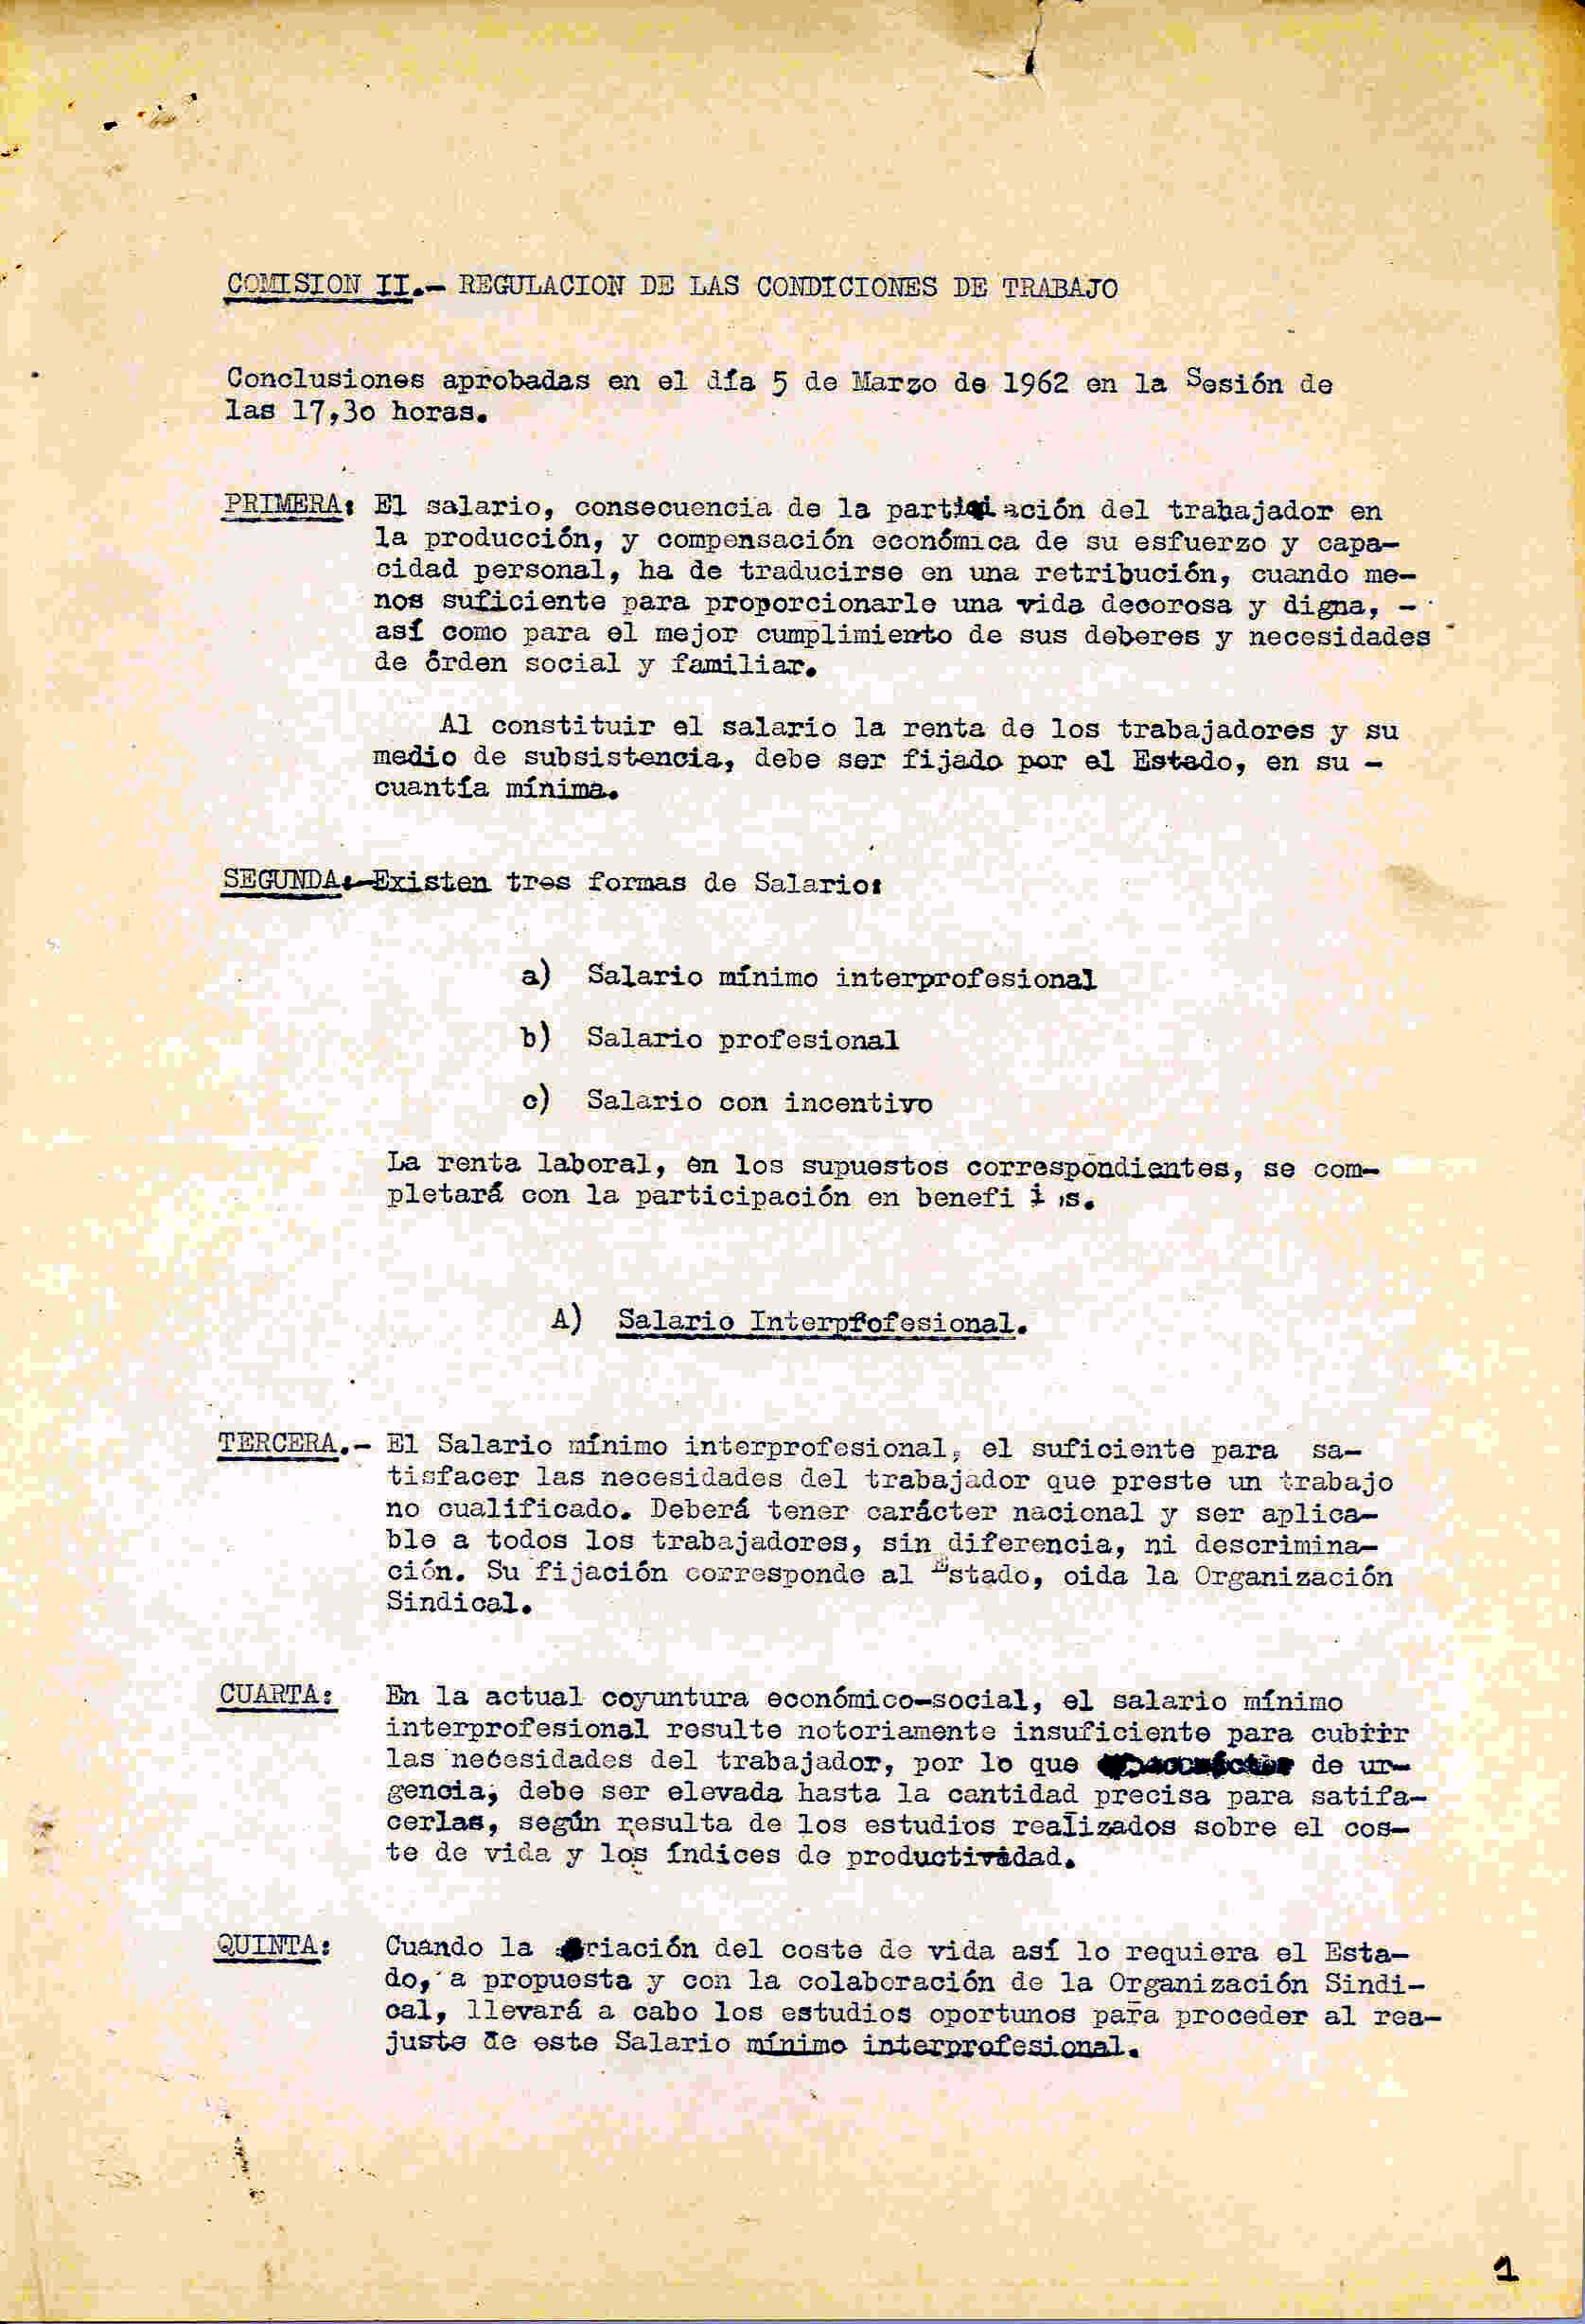 Copia de las conclusiones del II Congreso Nacional Sindical, celebrado en Madrid en marzo de 1962.